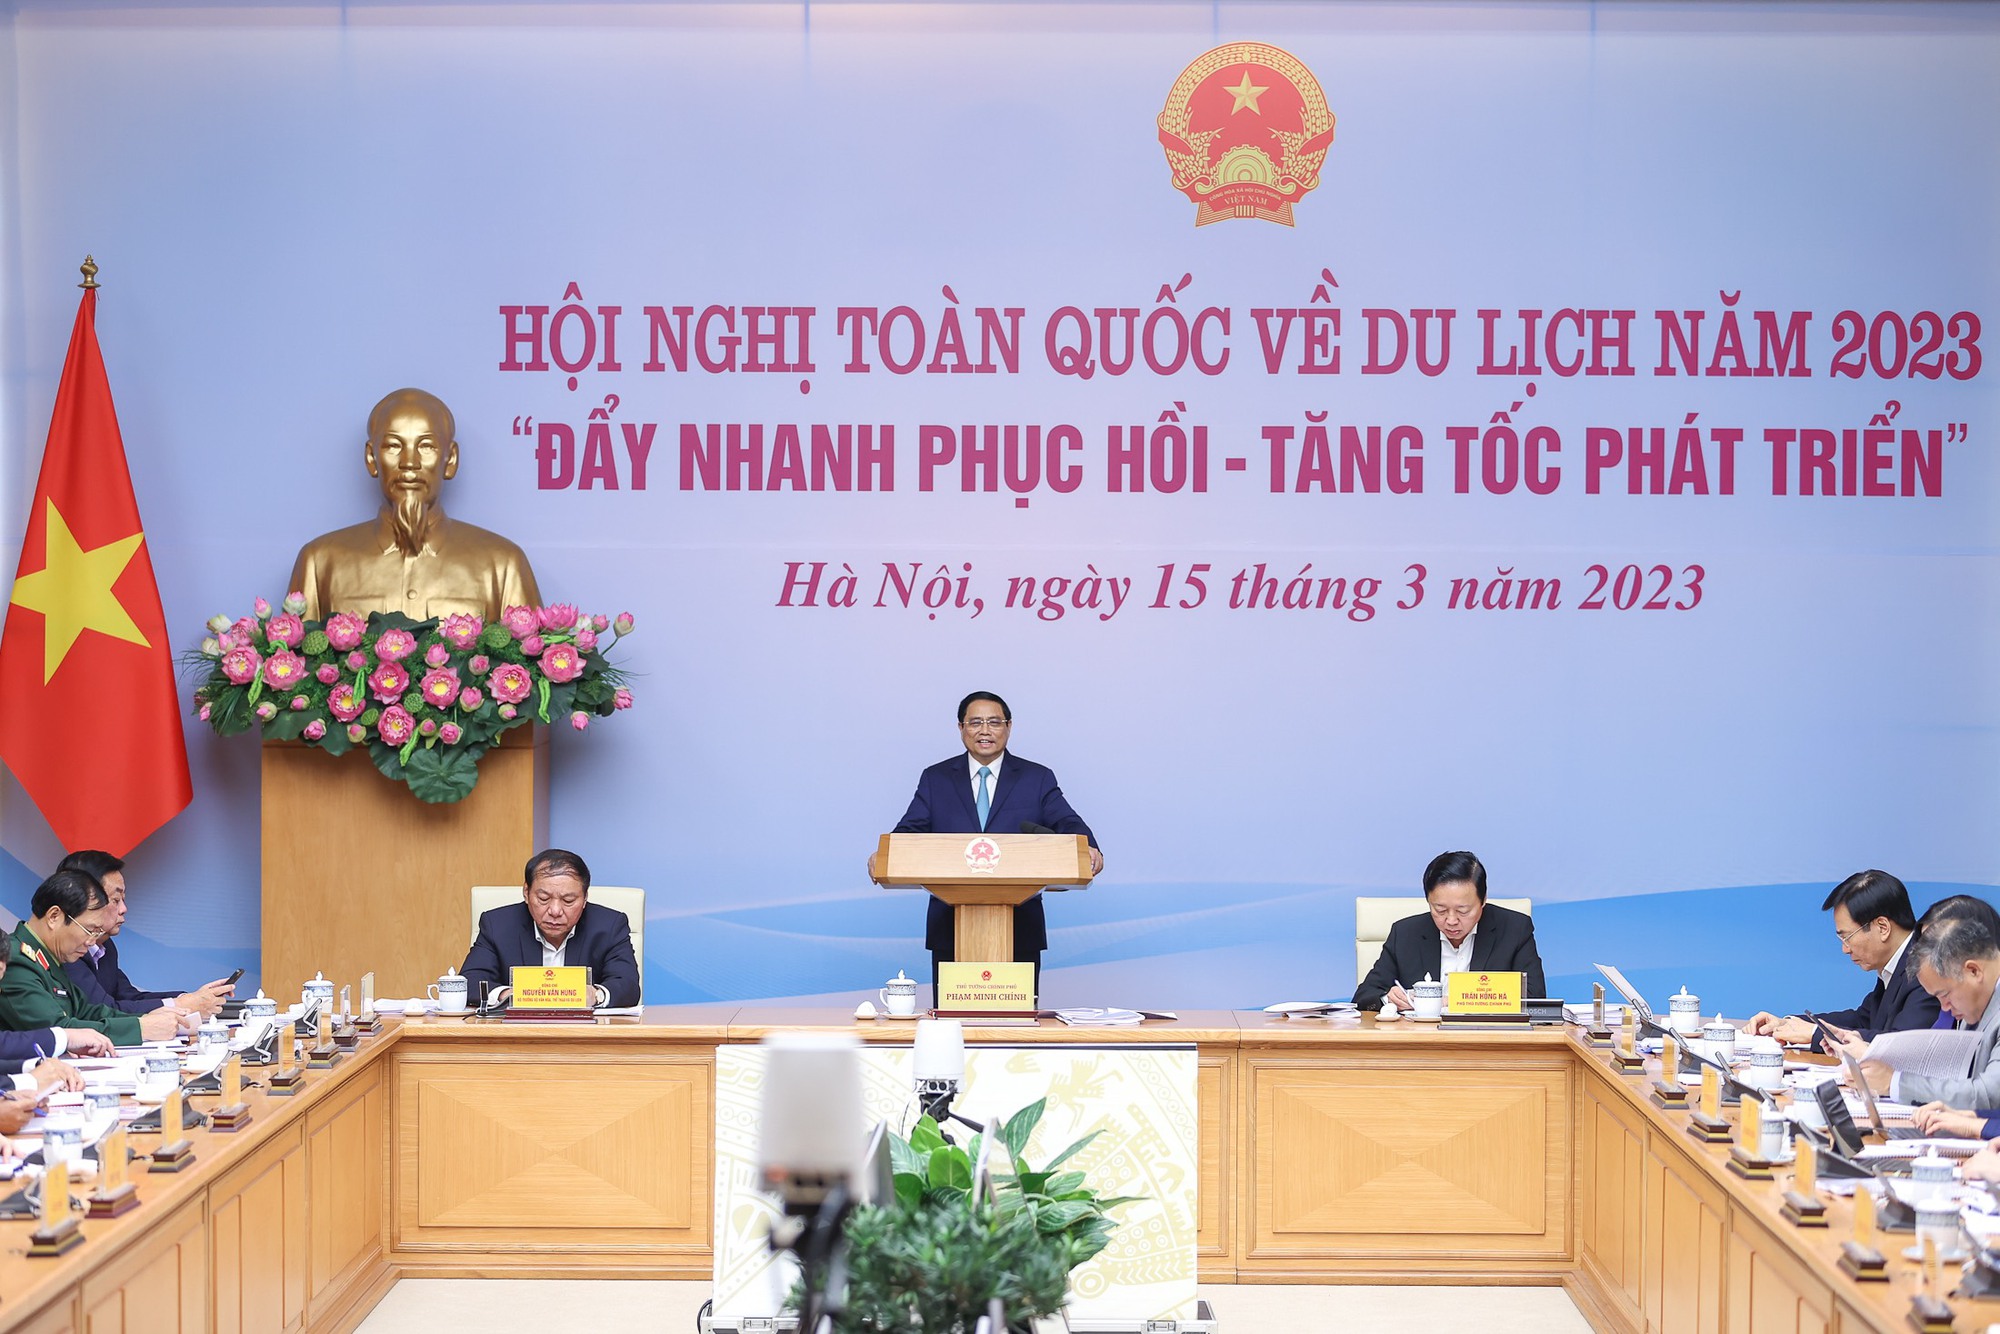 Thủ tướng chủ trì Hội nghị toàn quốc về du lịch năm 2023 - Ảnh 1.